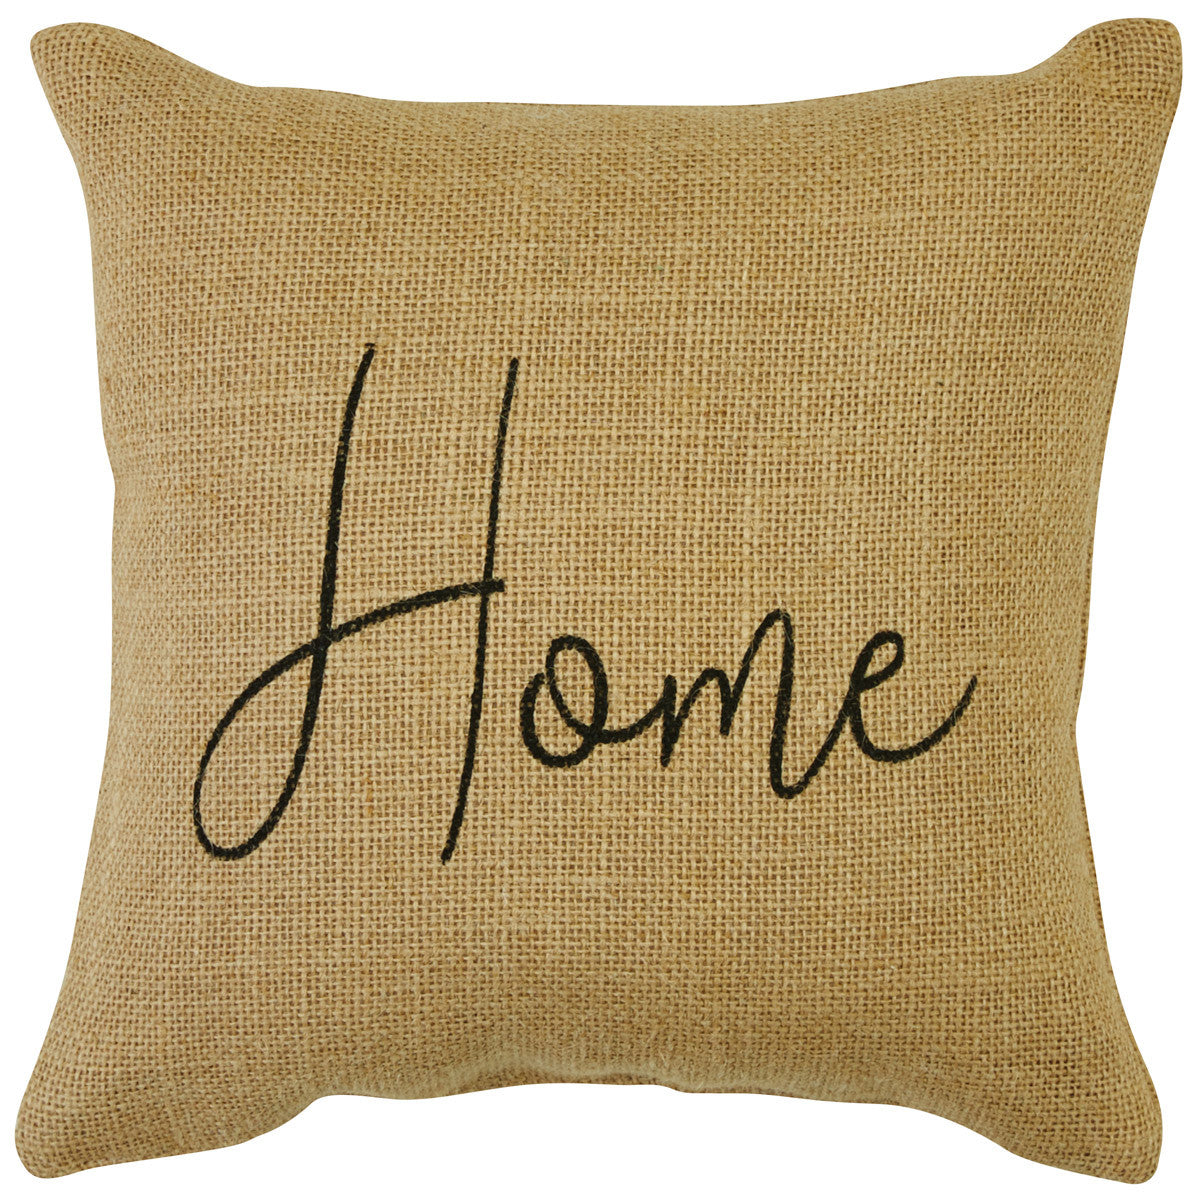 Home Sentiment Pillow - 10x10 Park Designs